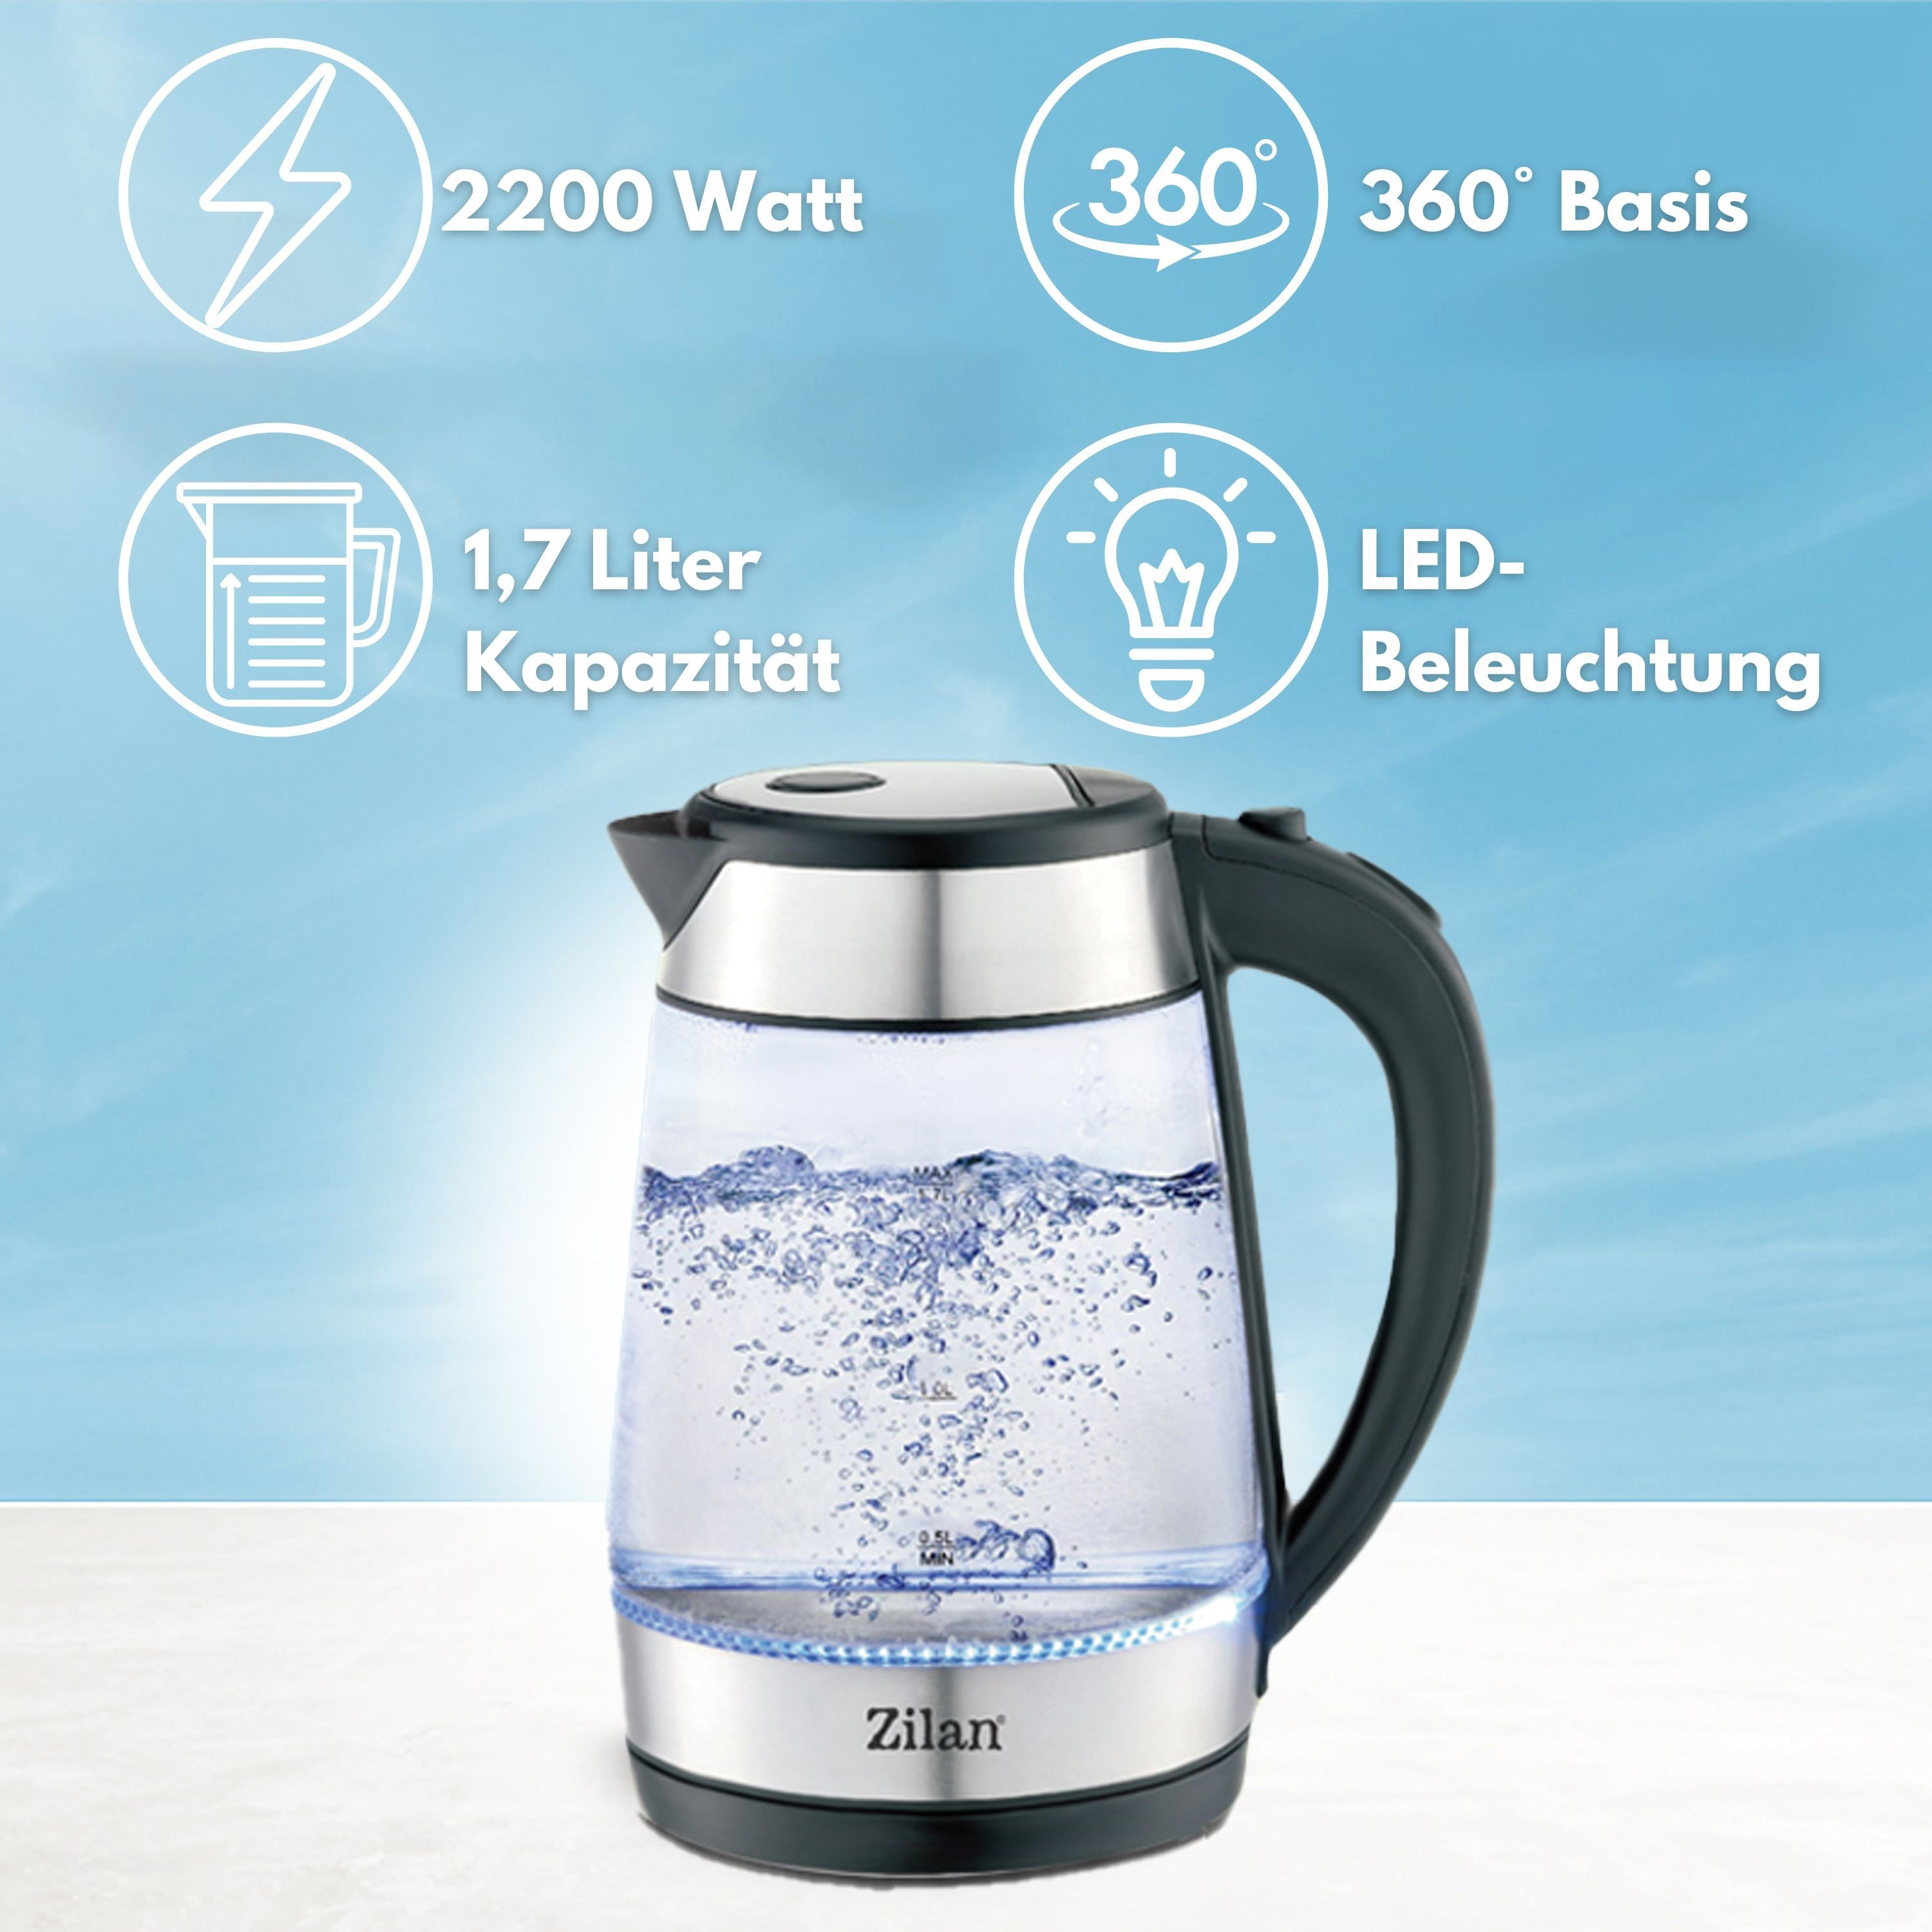 Zilan Glas Wasserkocher mit LED-Beleuchtung Watt Liter 1,7 2200 Überhitzungsschutz